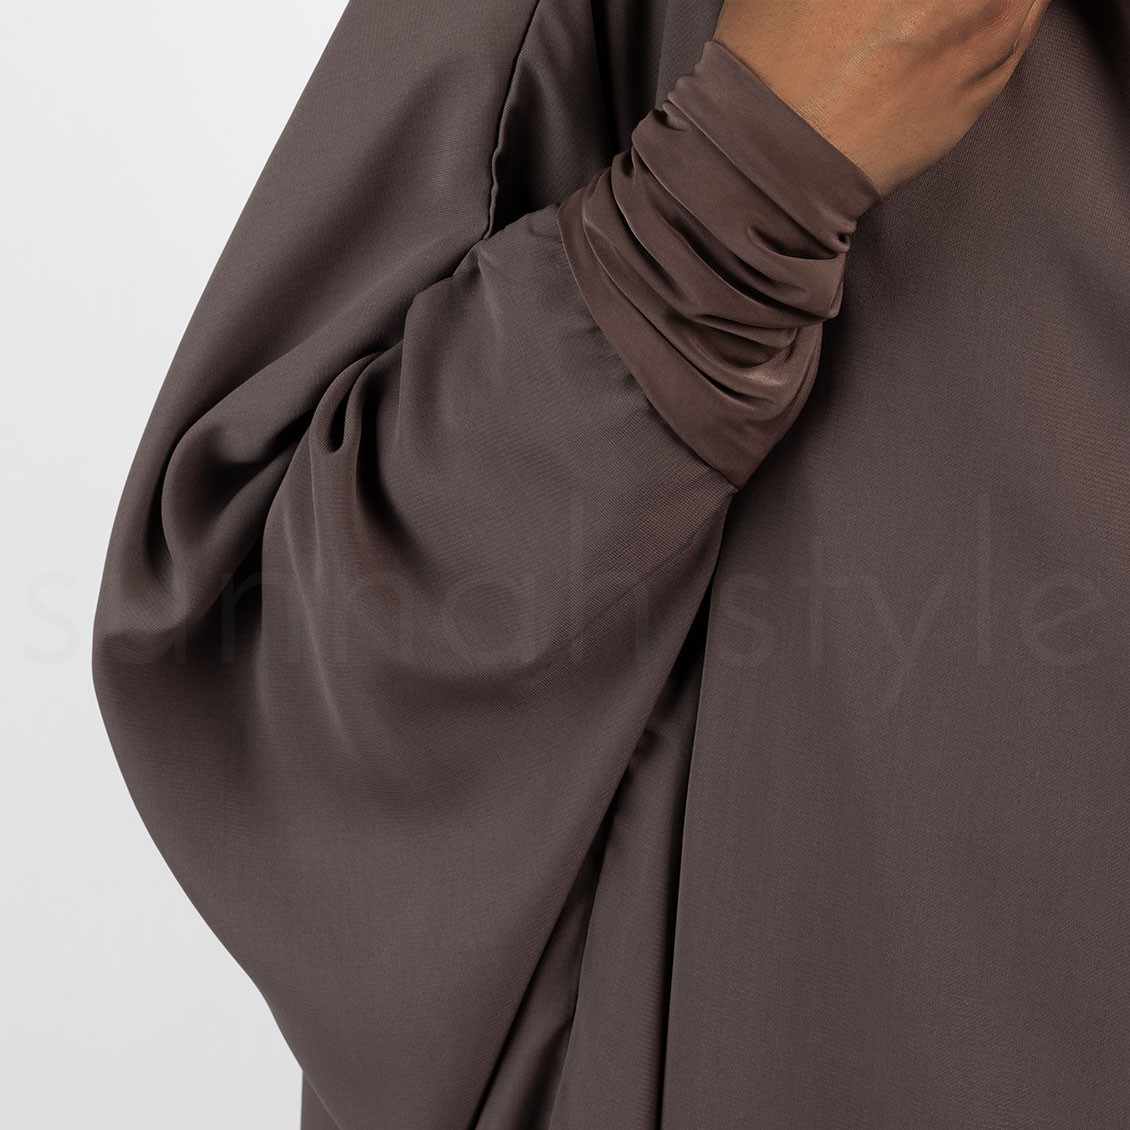 Sunnah Style Plain Jilbab Top Knee Length Mink